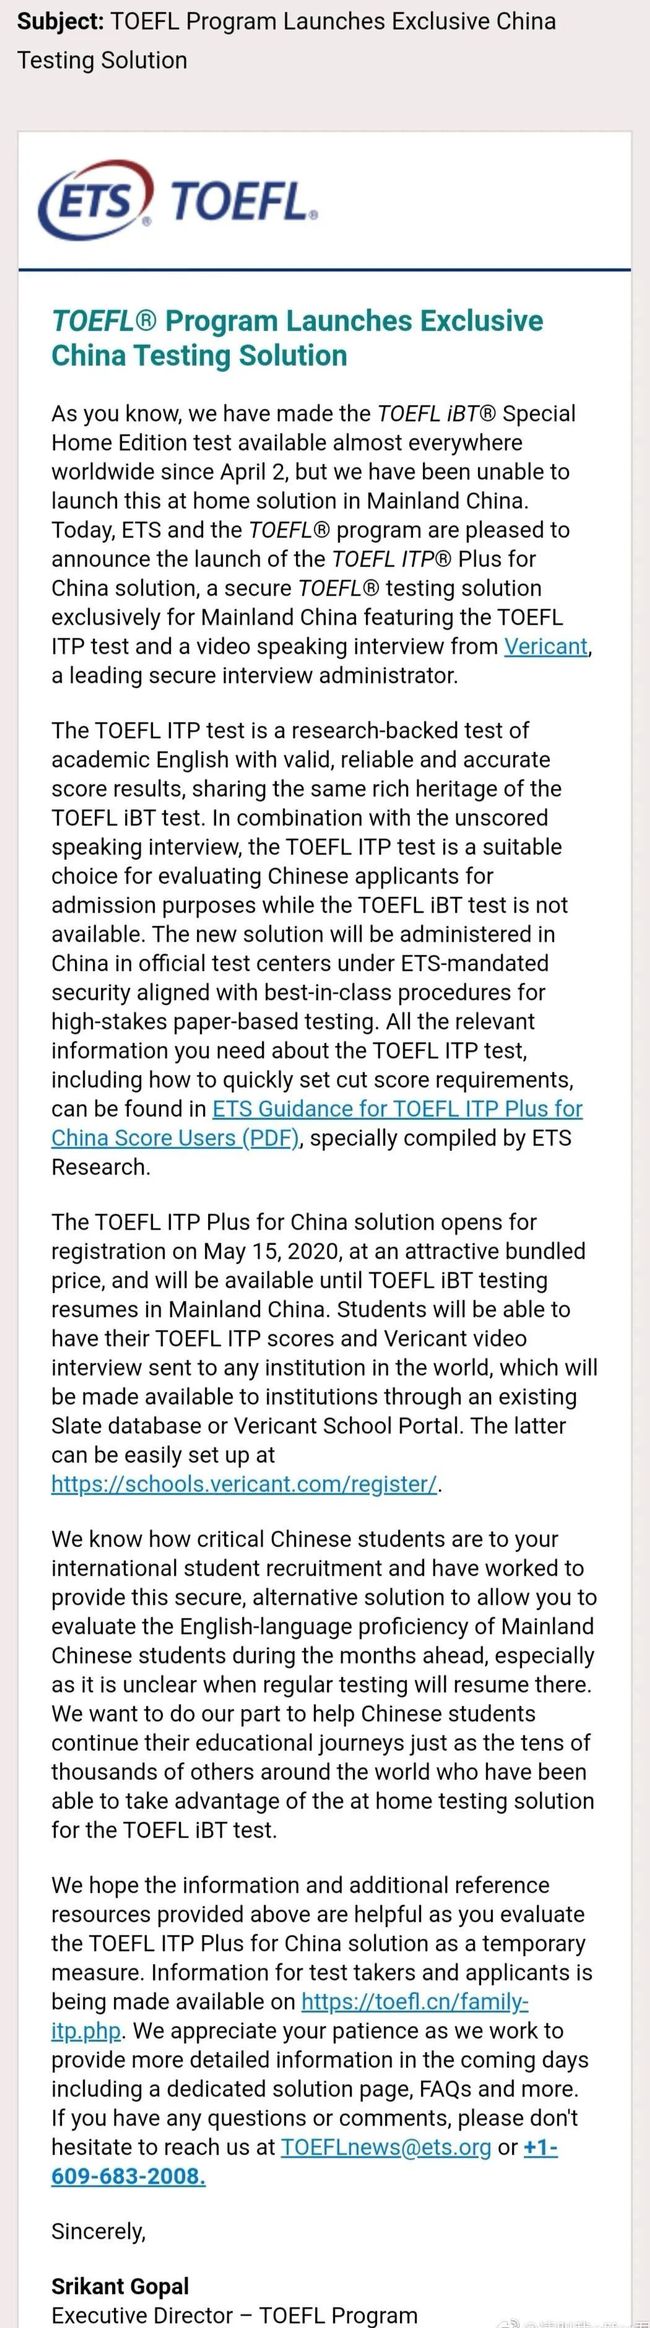 外媒:官方消息，ETS新推中国大陆“特供版”托福考试！插图